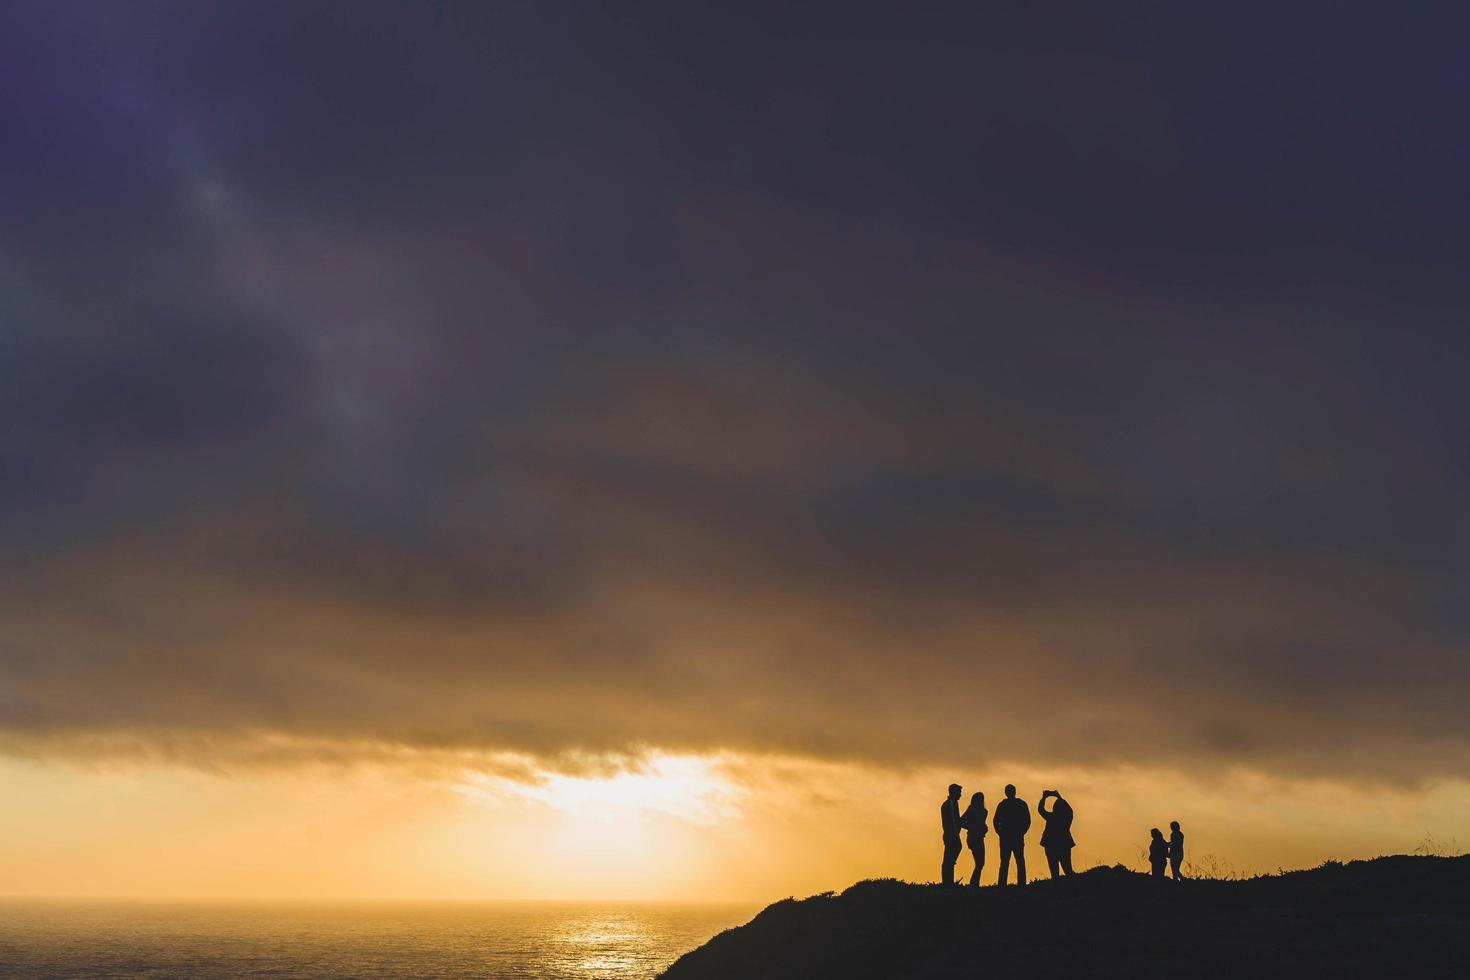 personnes silhouettées sur la falaise à l'heure d'or photo